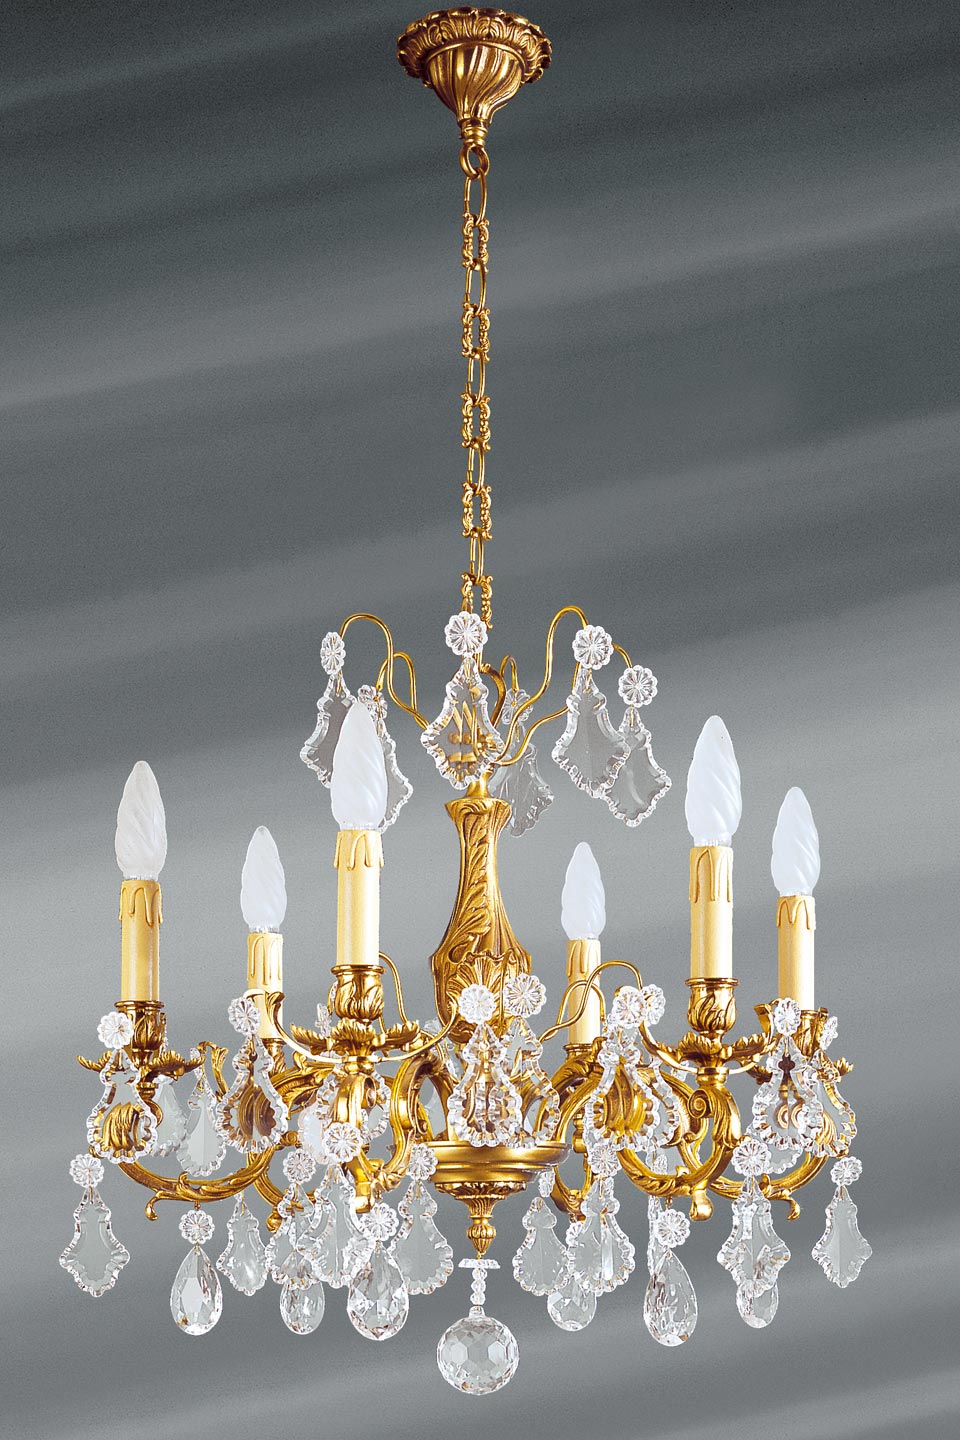 Lustre à pampilles cristal de bohème bronze patiné vieil or 8 lumières -  Lucien Gau, luminaires classiques de prestige - Réf. 12020199 - mobile